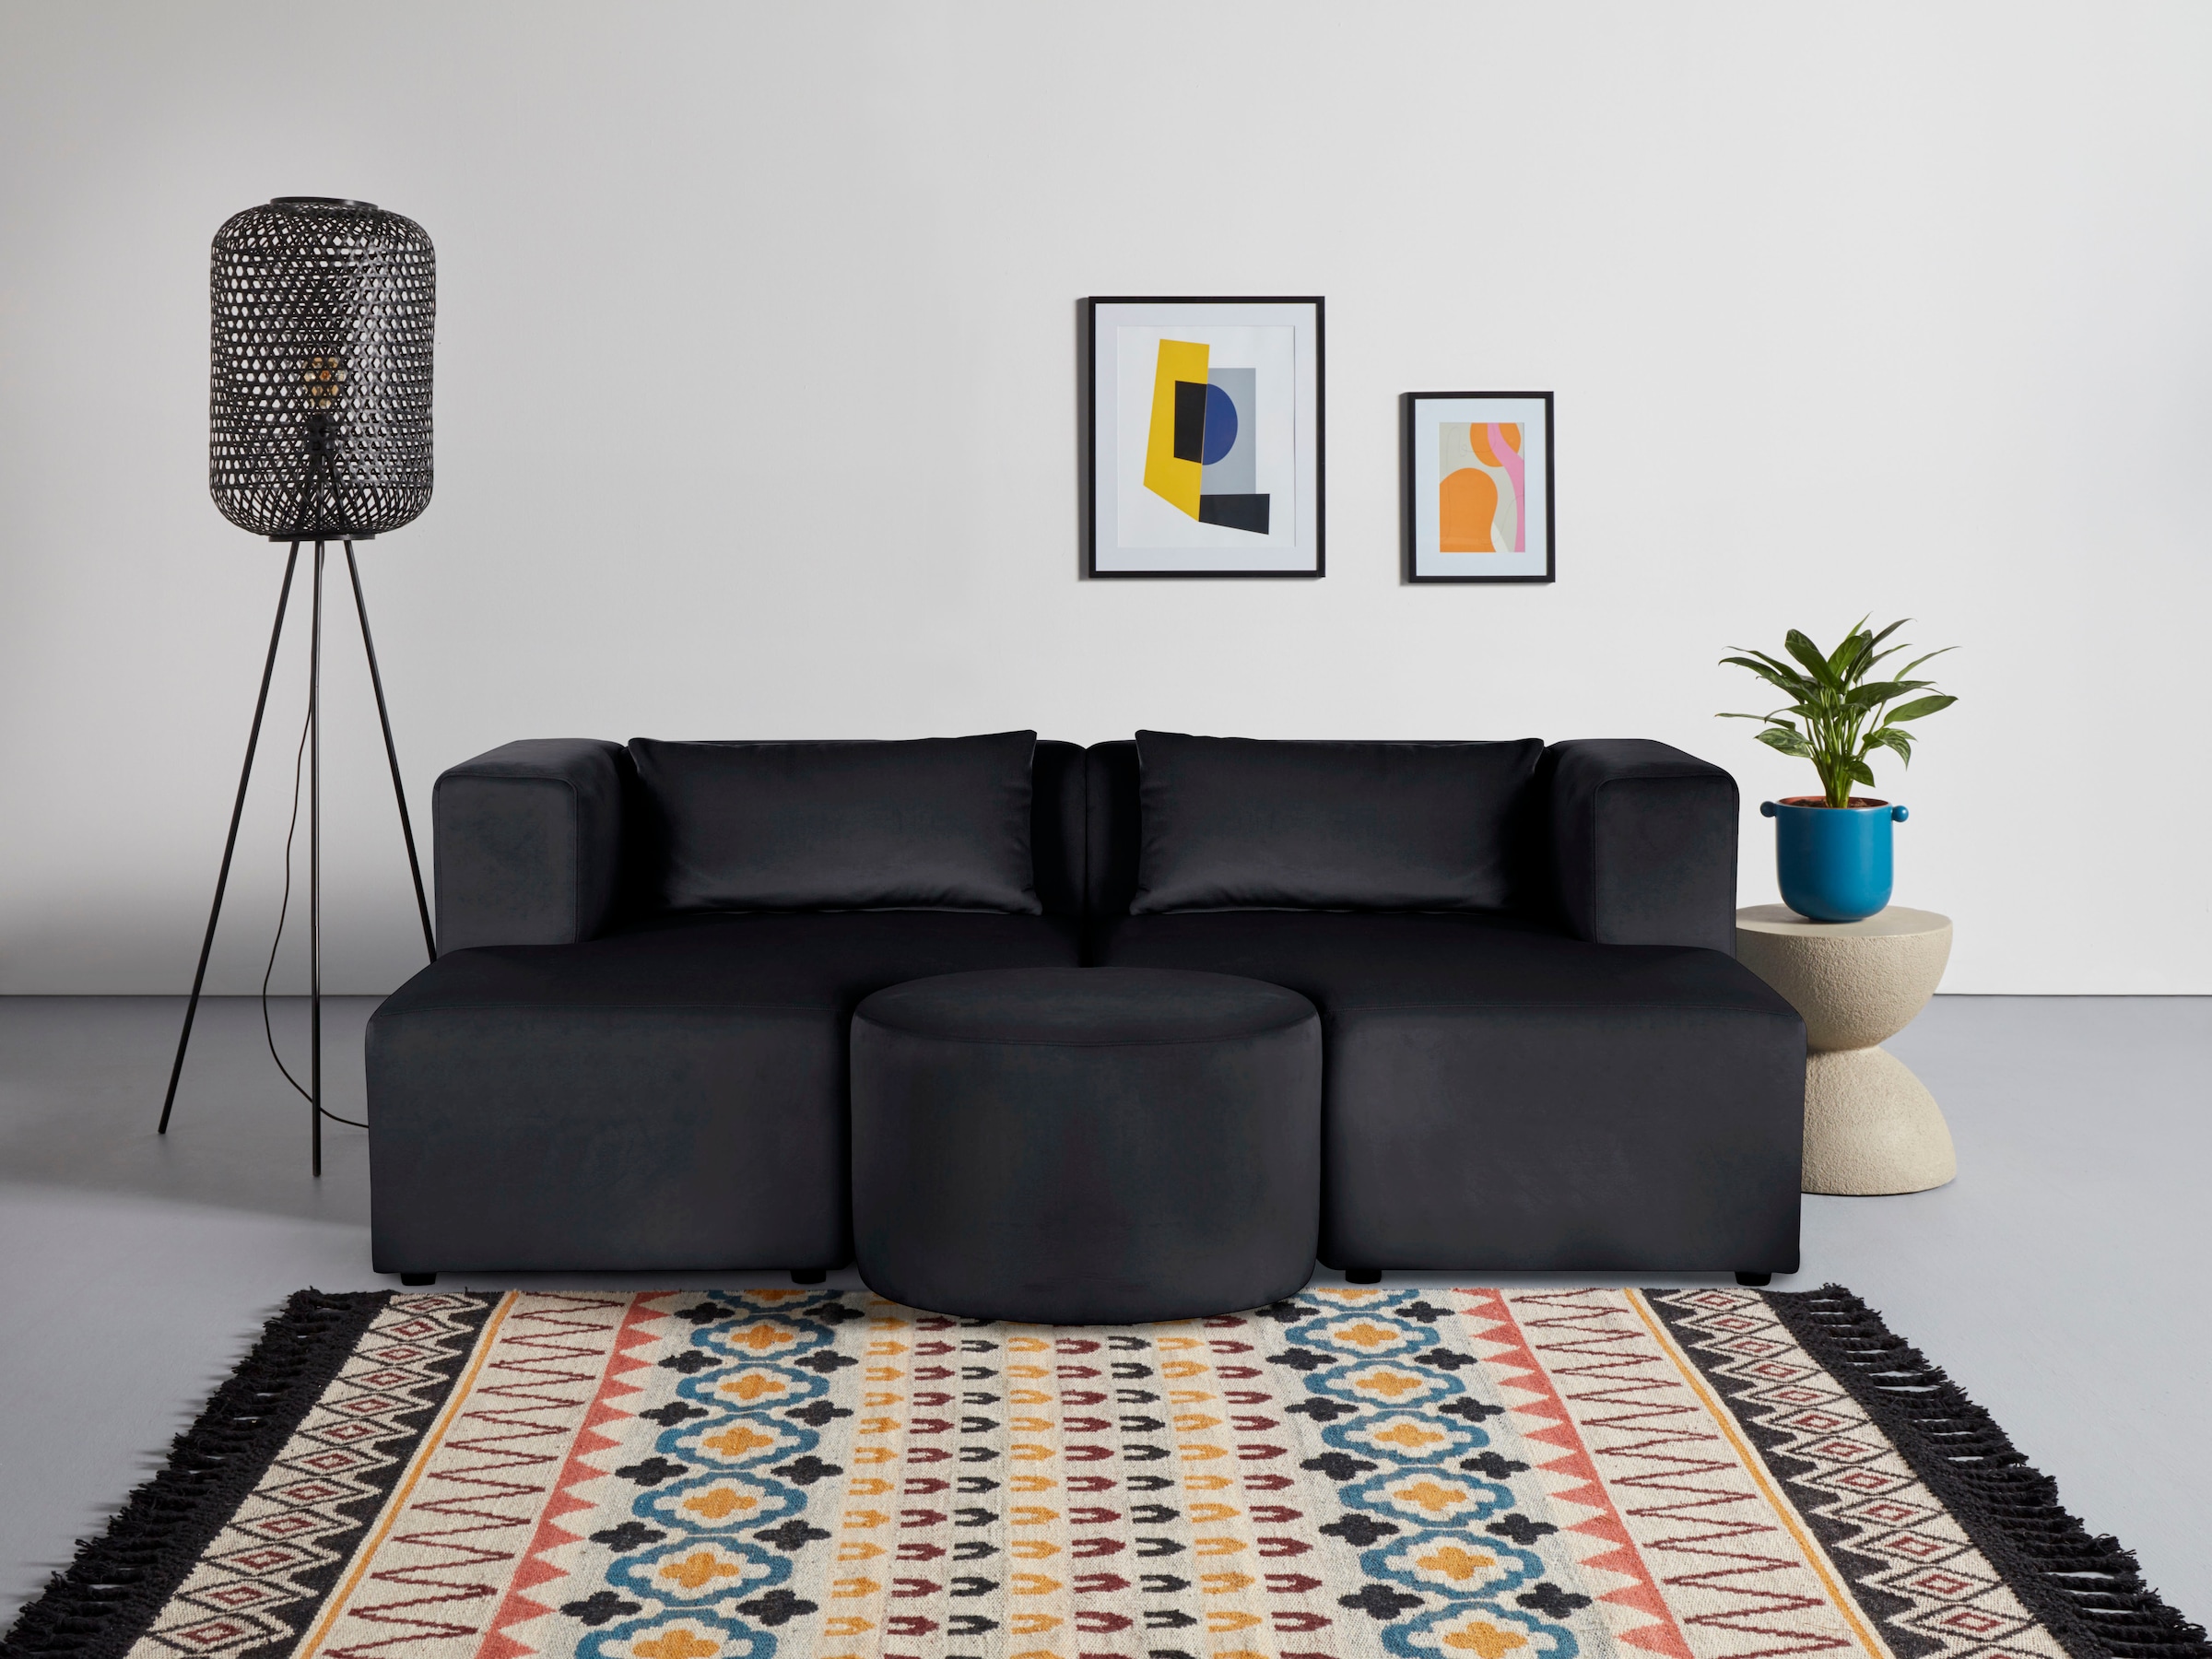 Leonique Sofa »Alexane«, zusammengesetzt aus Modulen, in vielen Bezugsqualitäten und Farben.